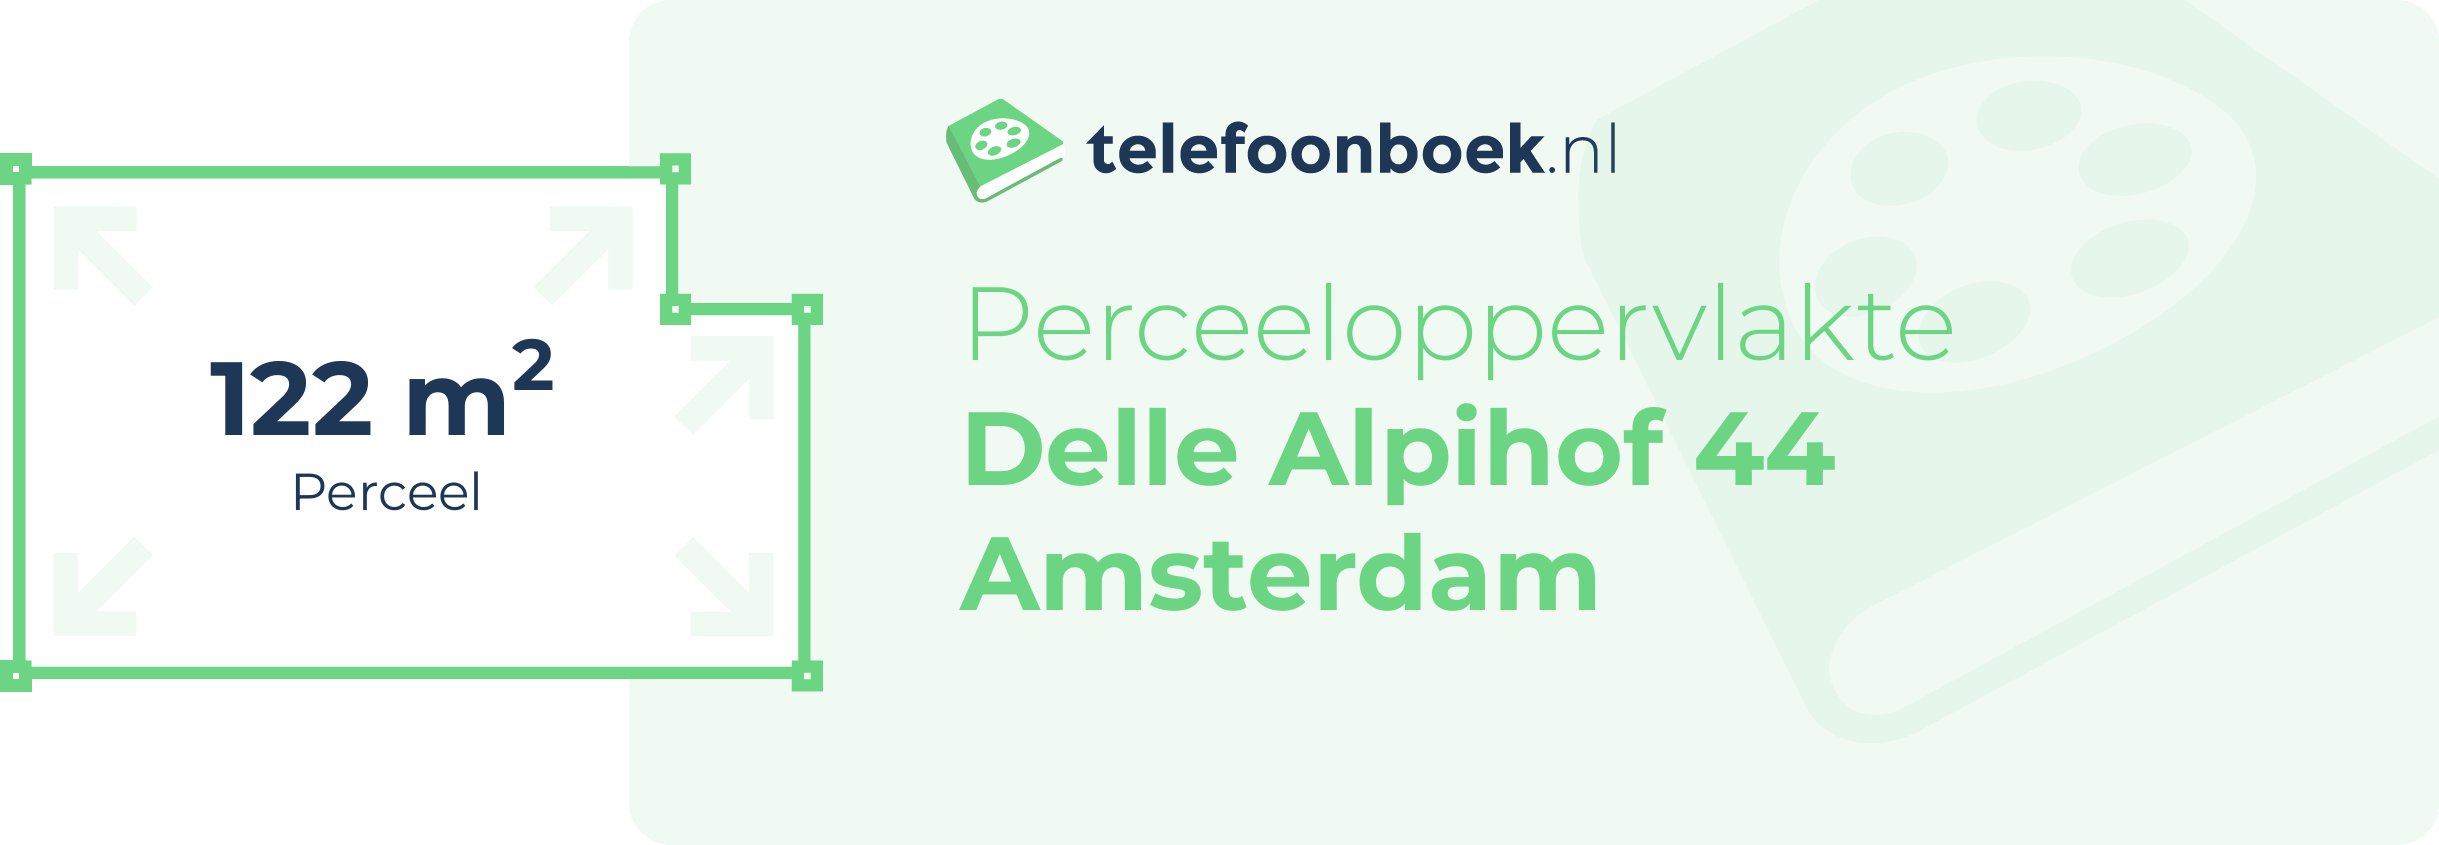 Perceeloppervlakte Delle Alpihof 44 Amsterdam